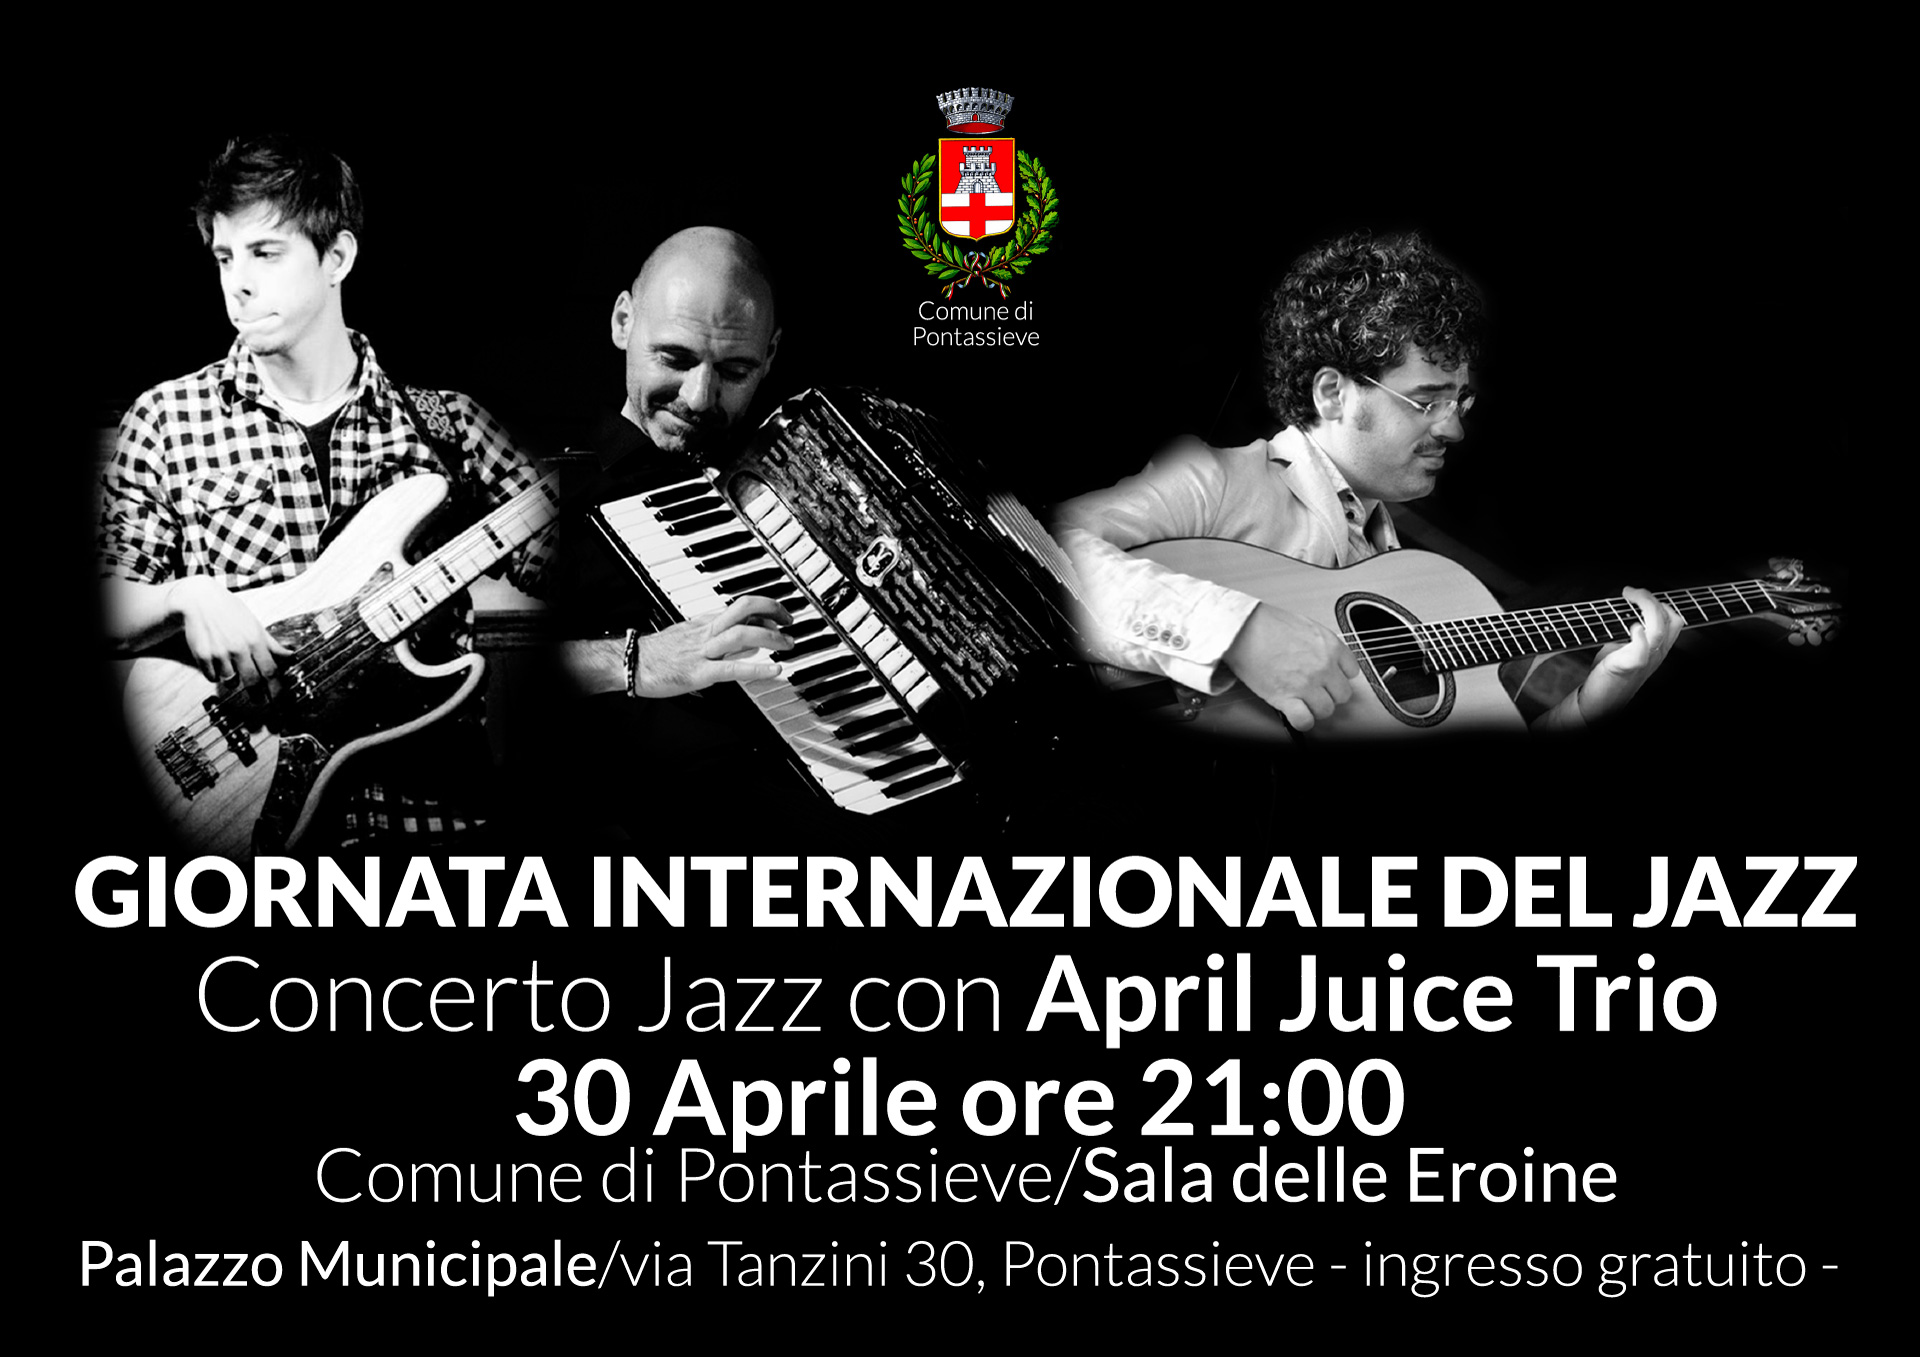 Concerto Jazz con April Juice Trio – 30 Aprile ore 21:00 – Comune di Pontassieve Sala delle Eroine